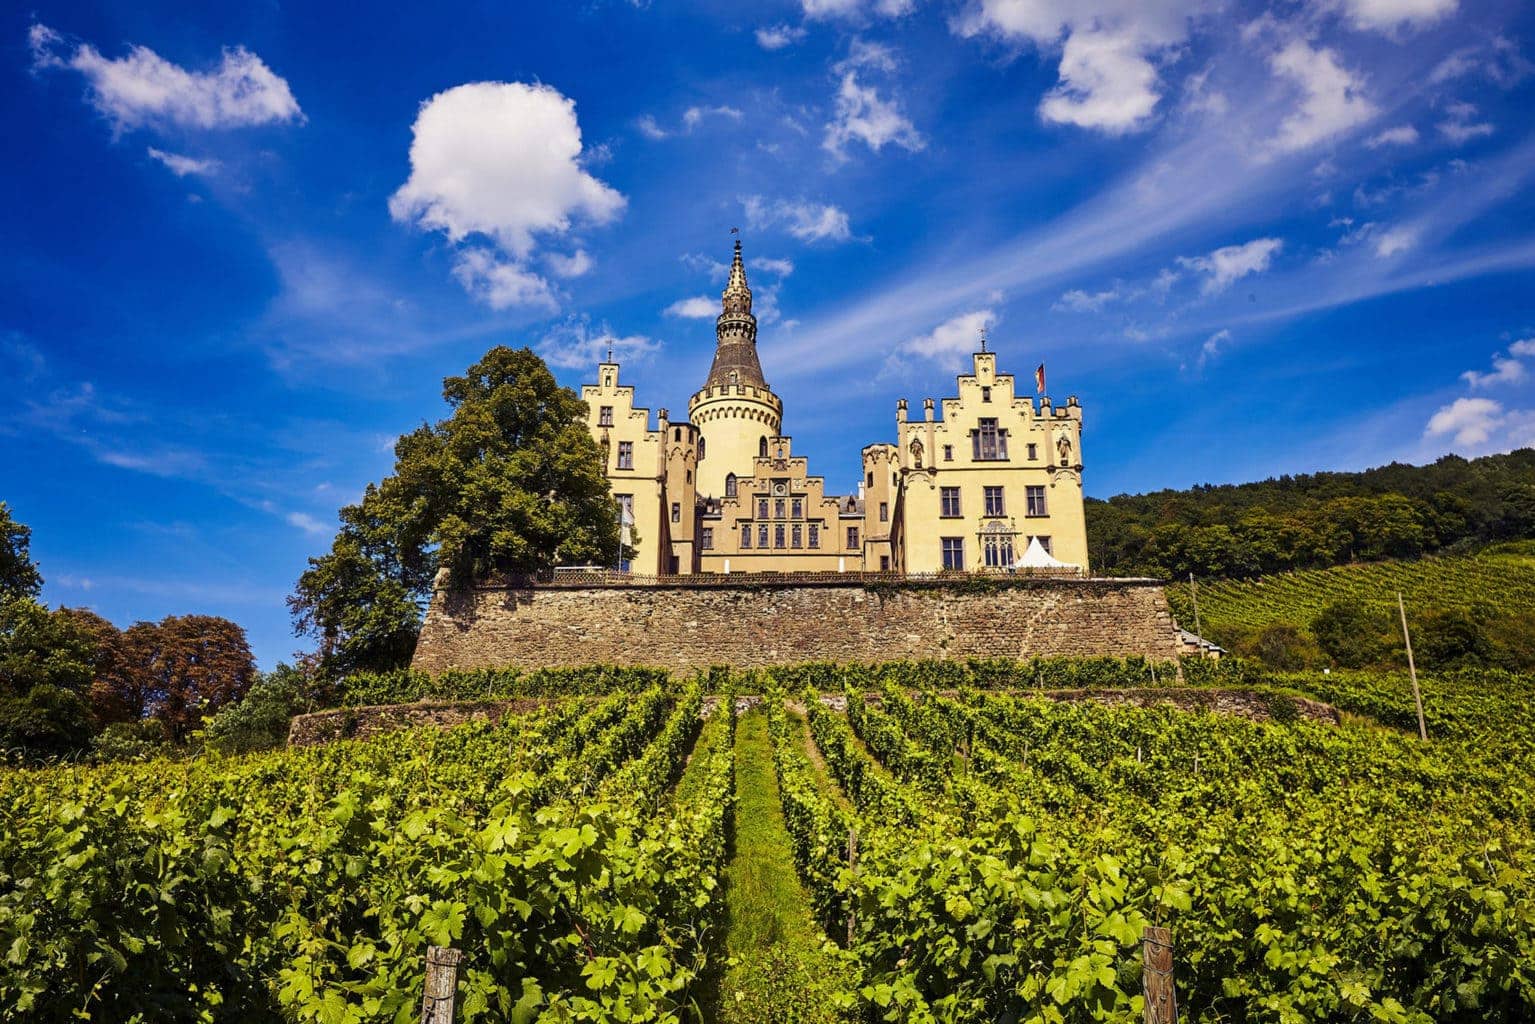 Een kasteel met wijngaarden behoort tot de attracties tijdens een wandeltocht aan de middenrijn in Bad Hönnigen